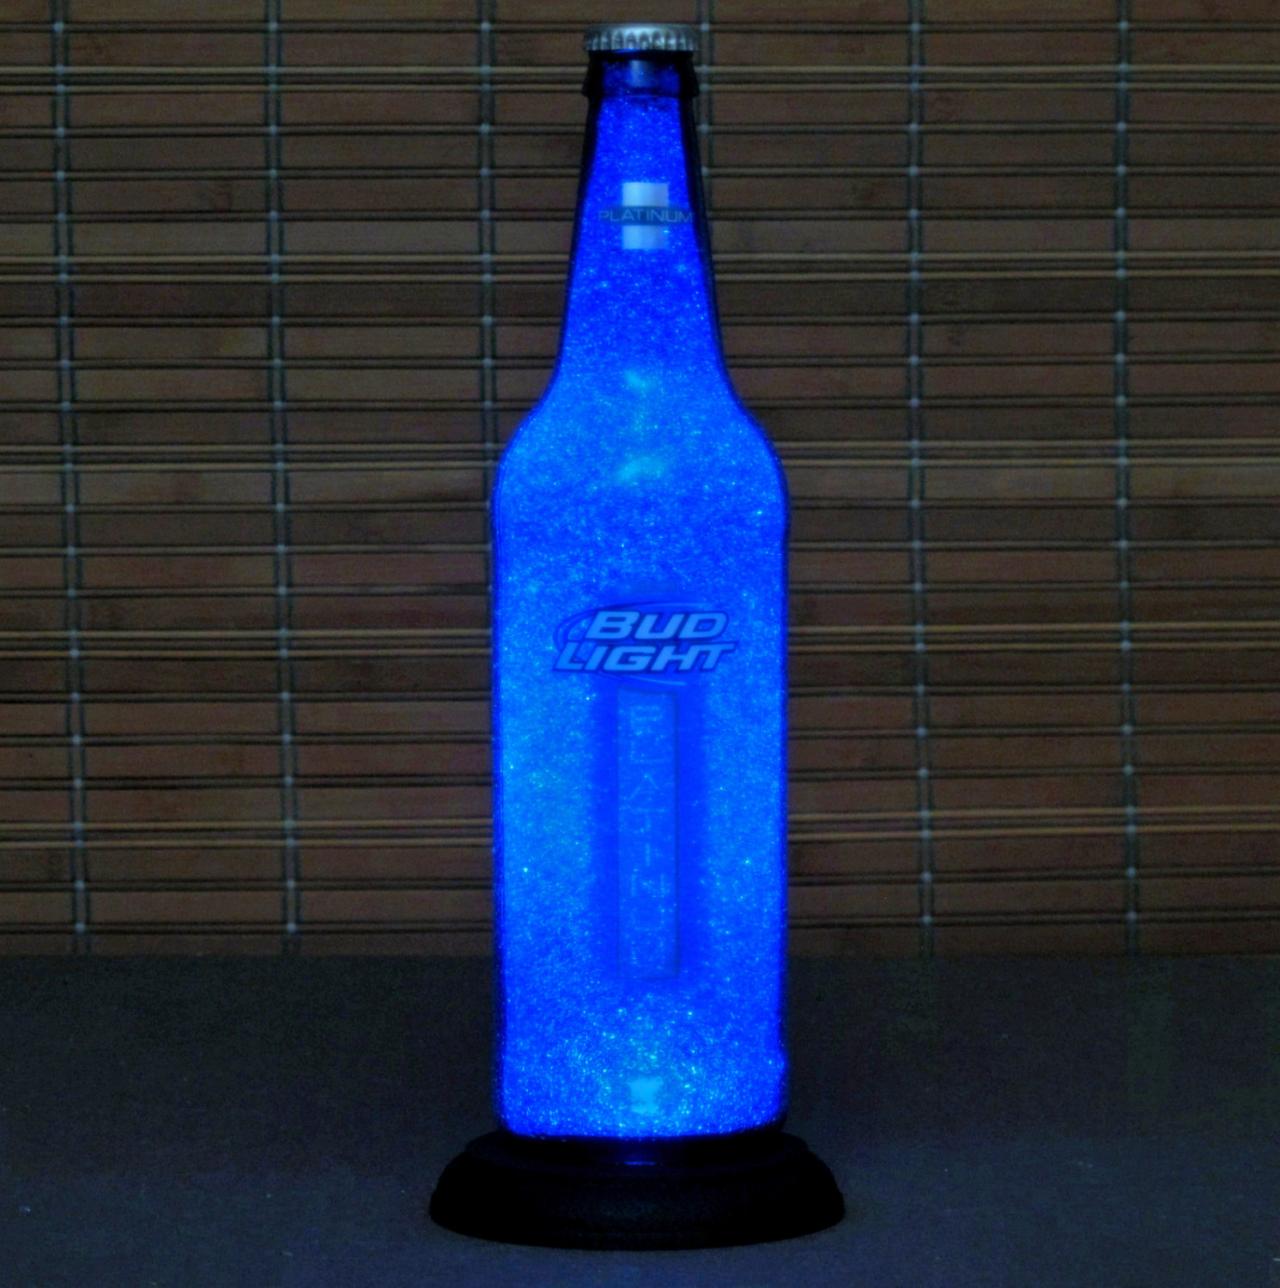 Big 22oz Bud Platinum Blue Beer Bottle Lamp Bar Light